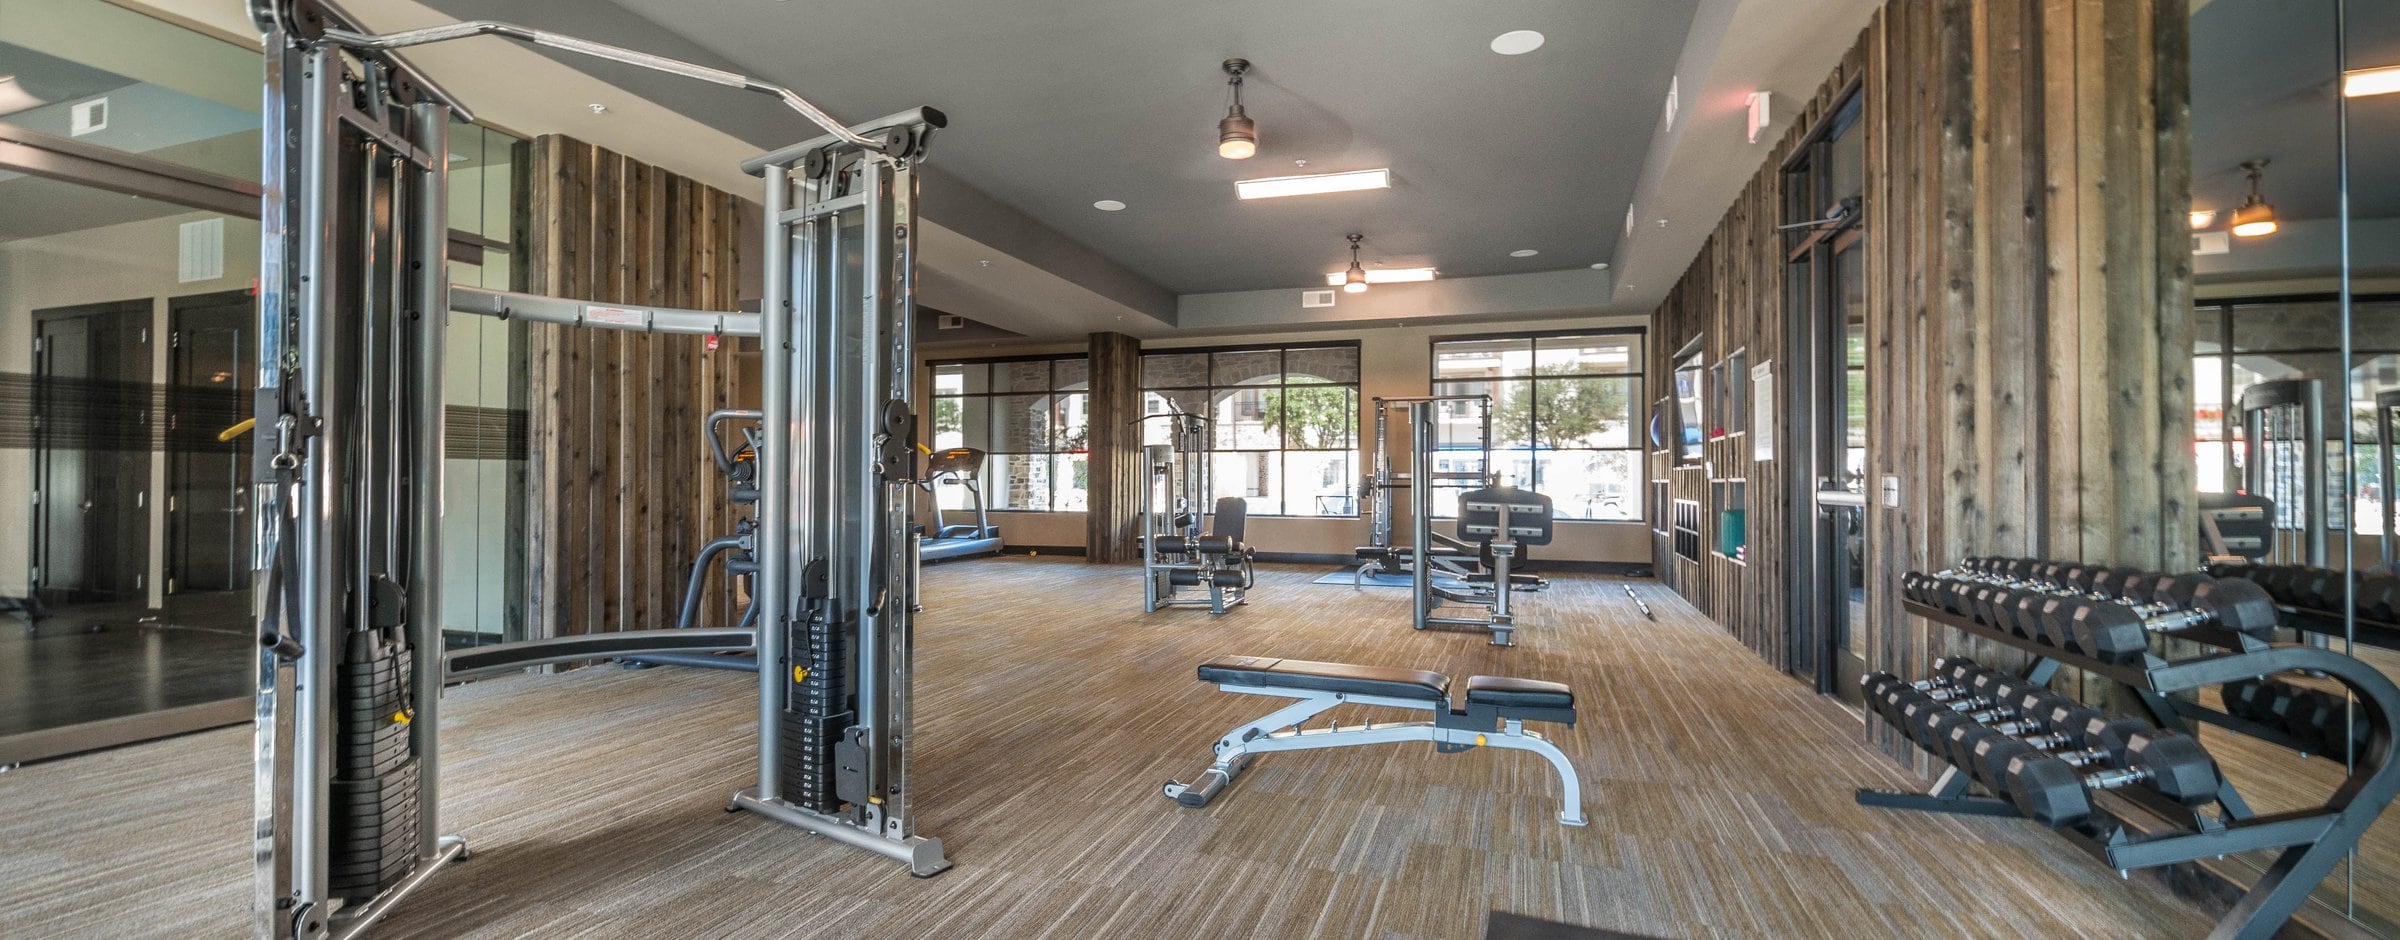 Avalon Lakeside Fitness Center